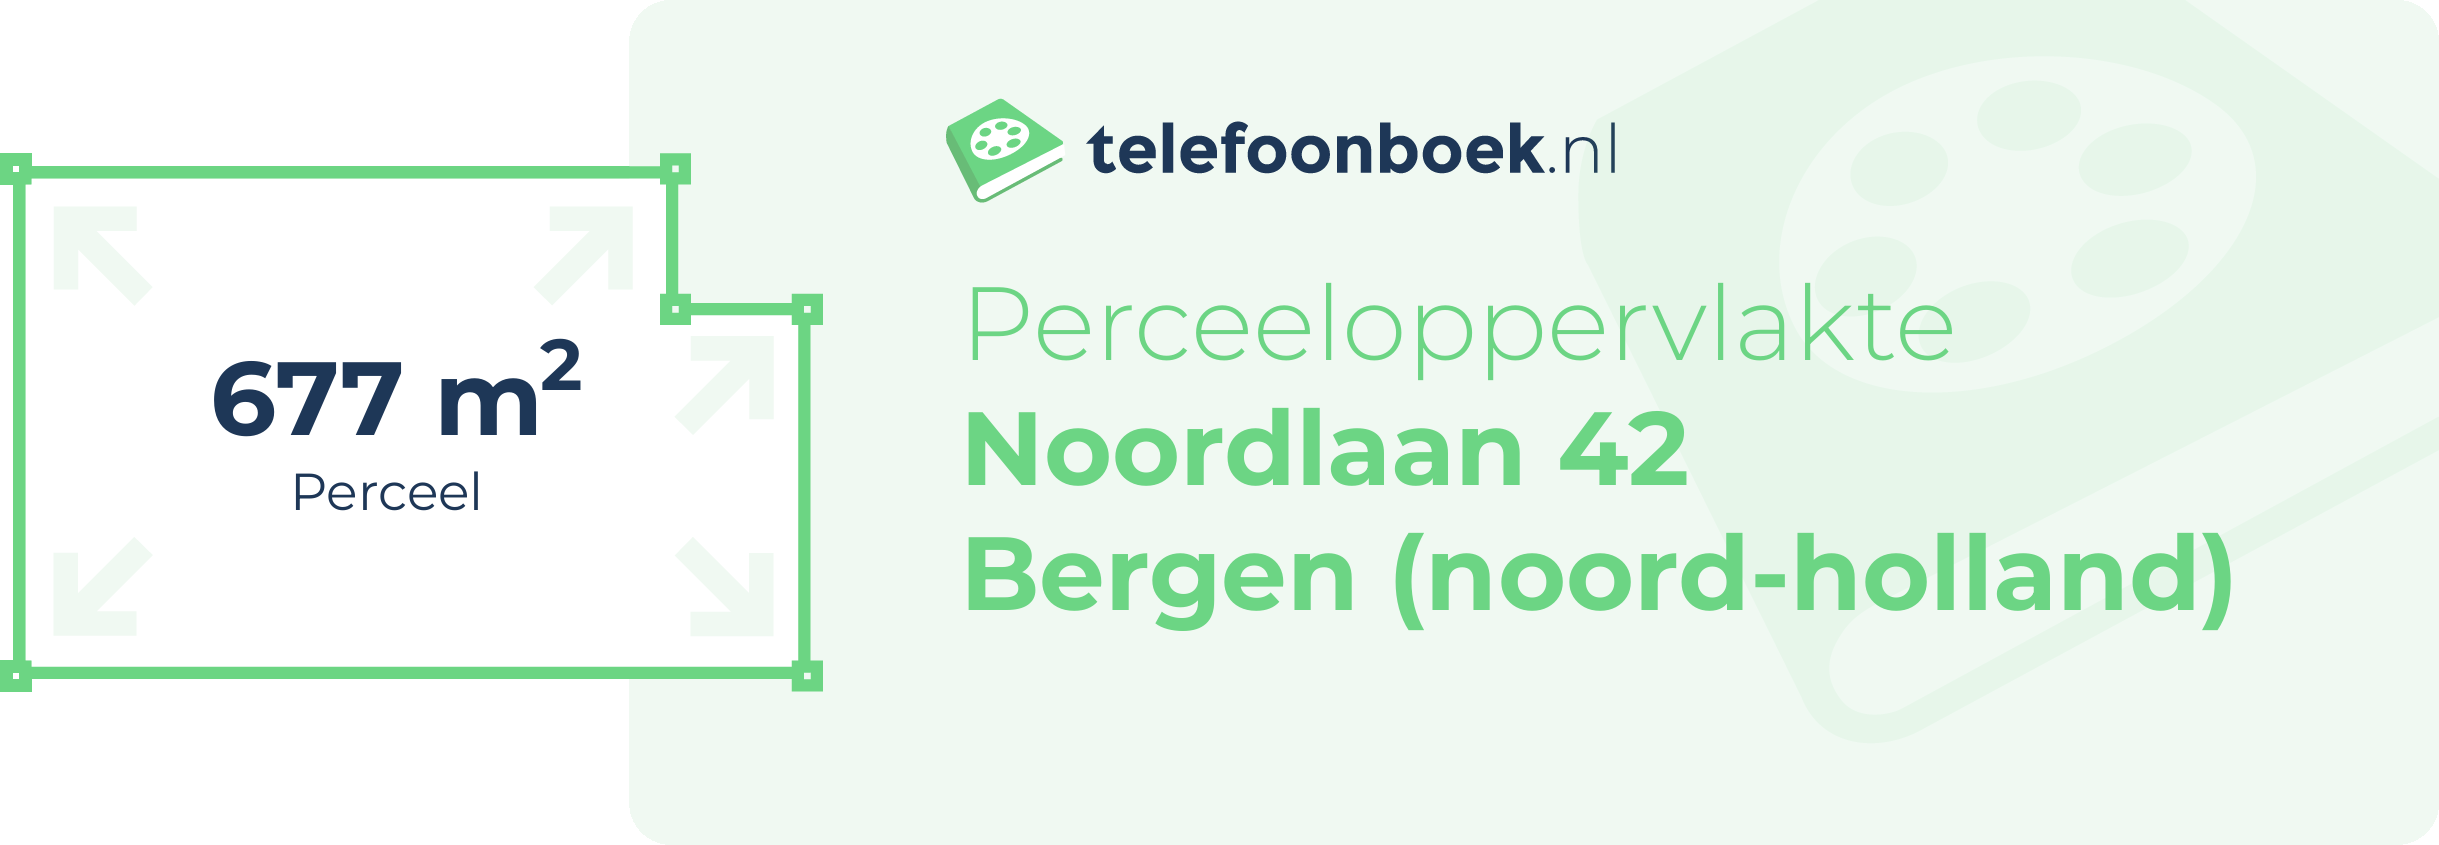 Perceeloppervlakte Noordlaan 42 Bergen (Noord-Holland)